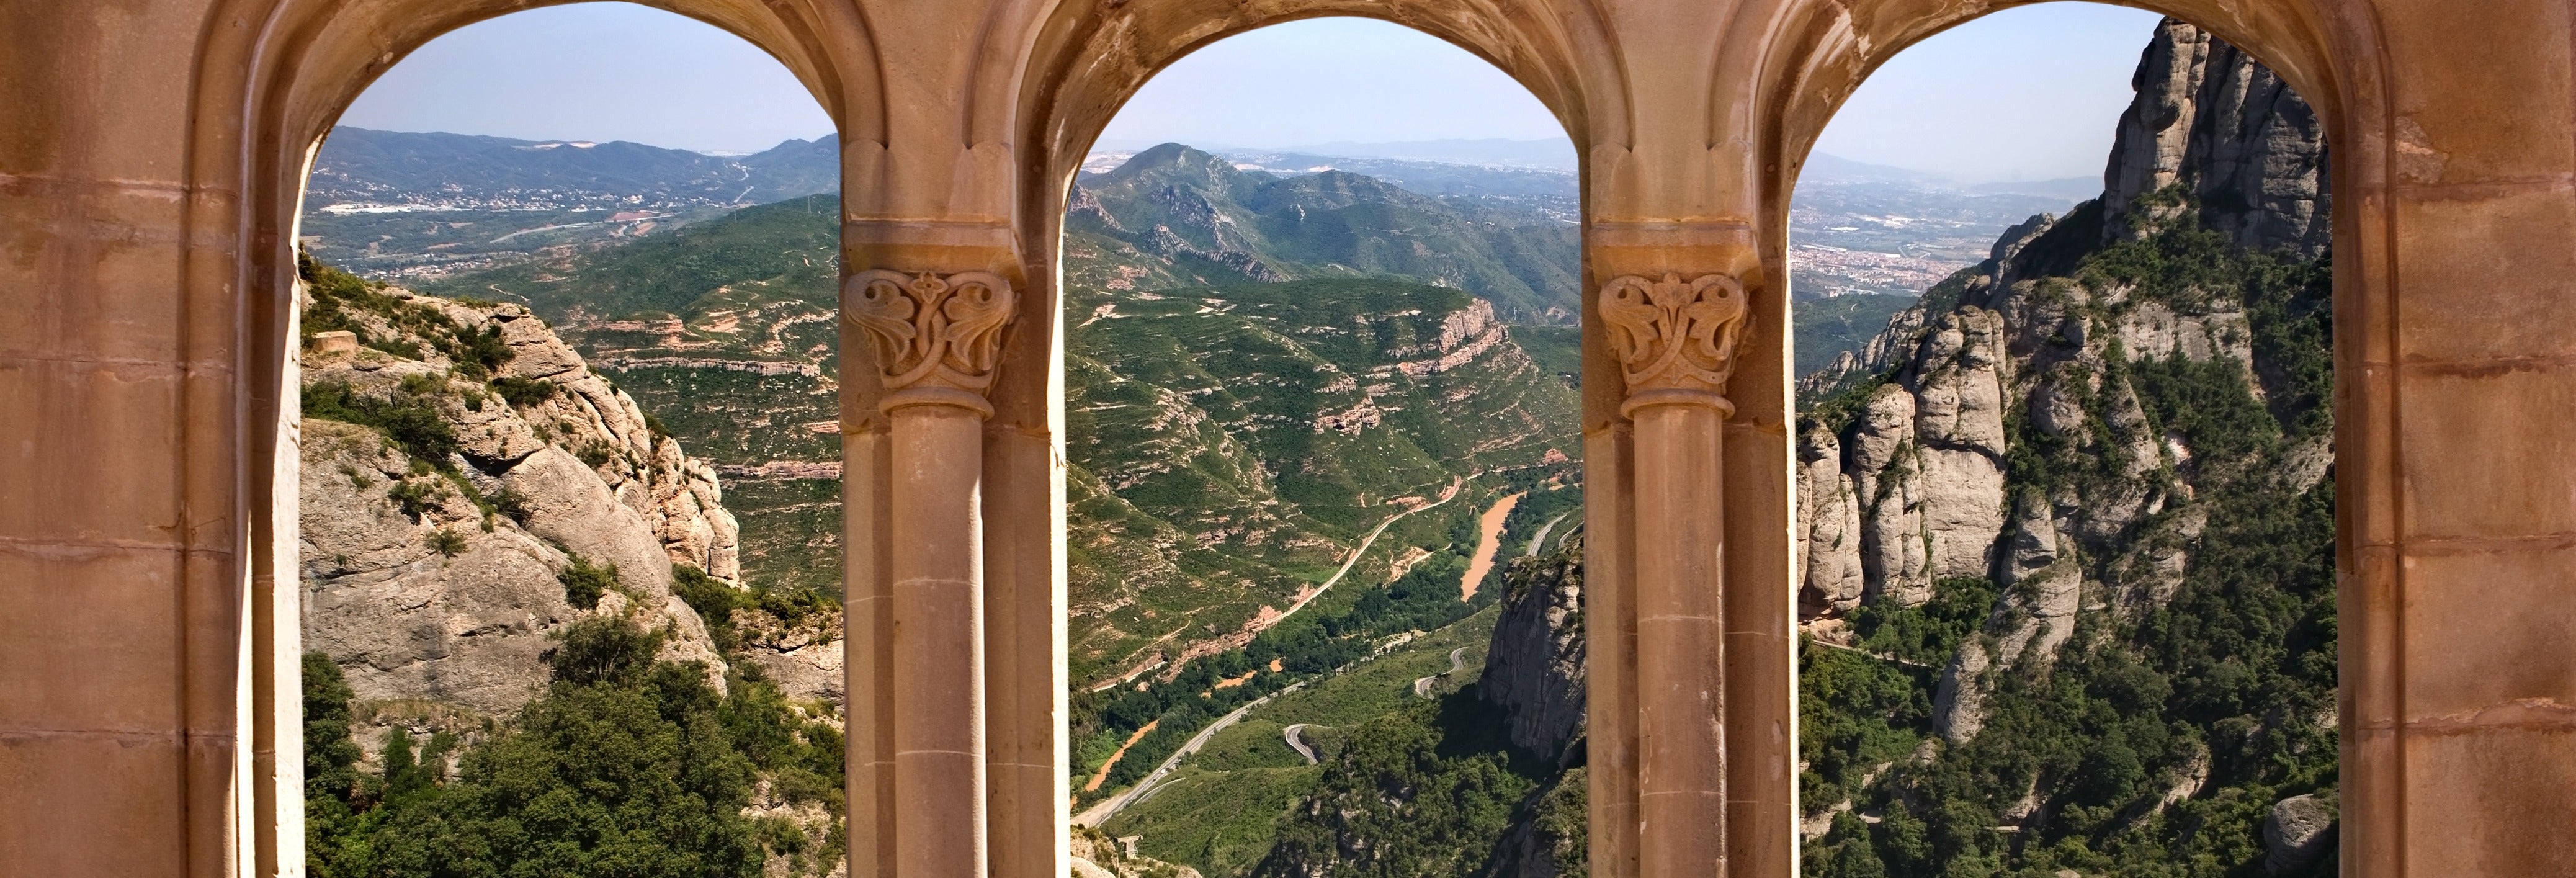 Trekking por Montserrat y visita al monasterio